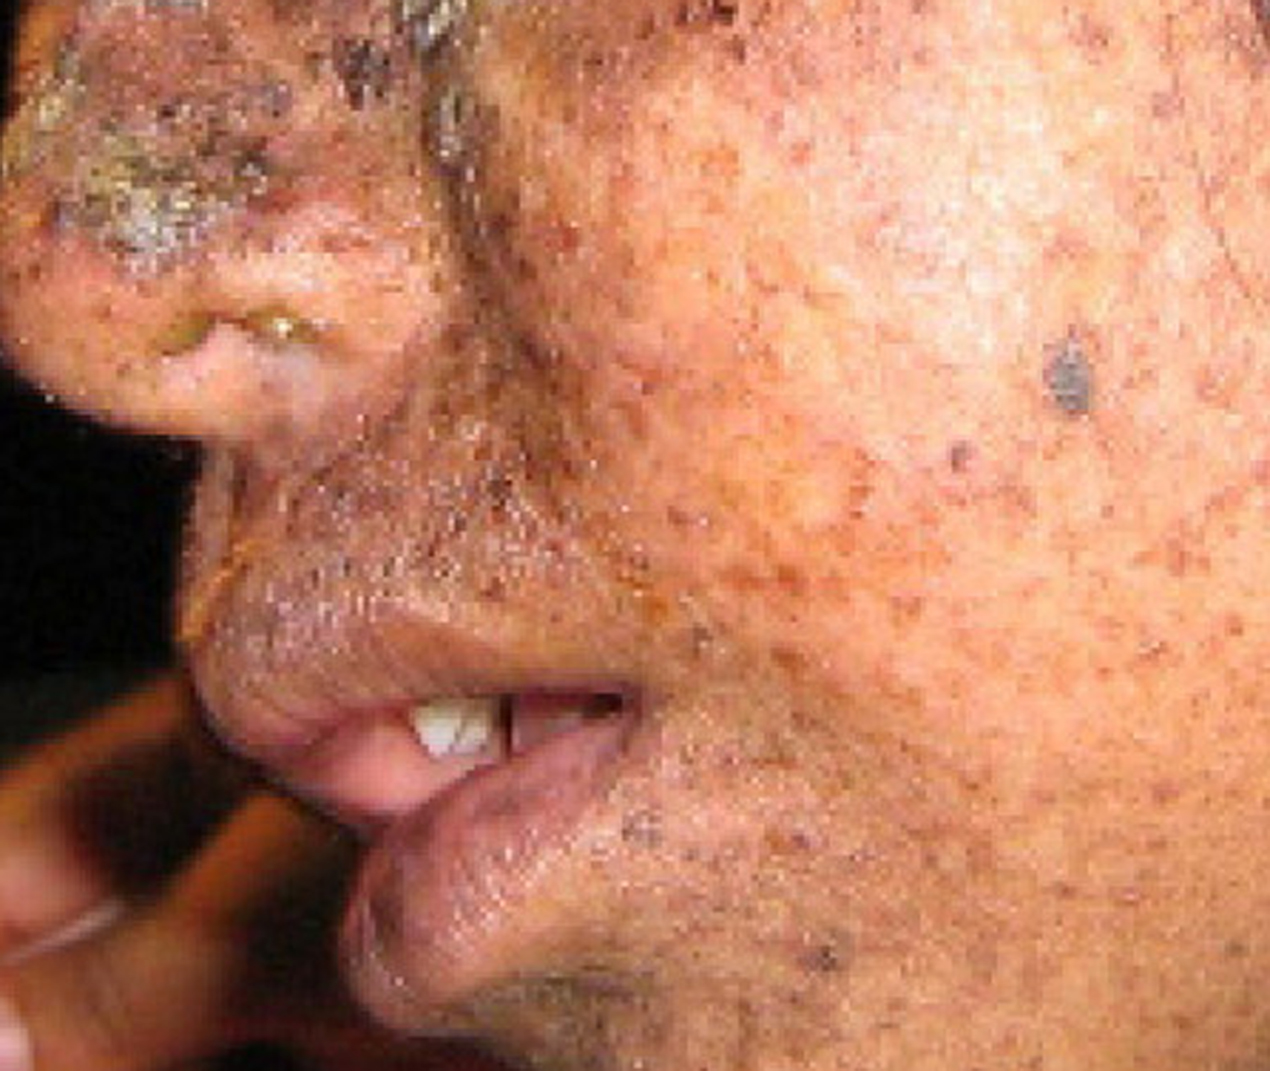 La foto muestra a una persona con lesiones cutáneas moteadas que resultan de xerodermia pigmentosa.